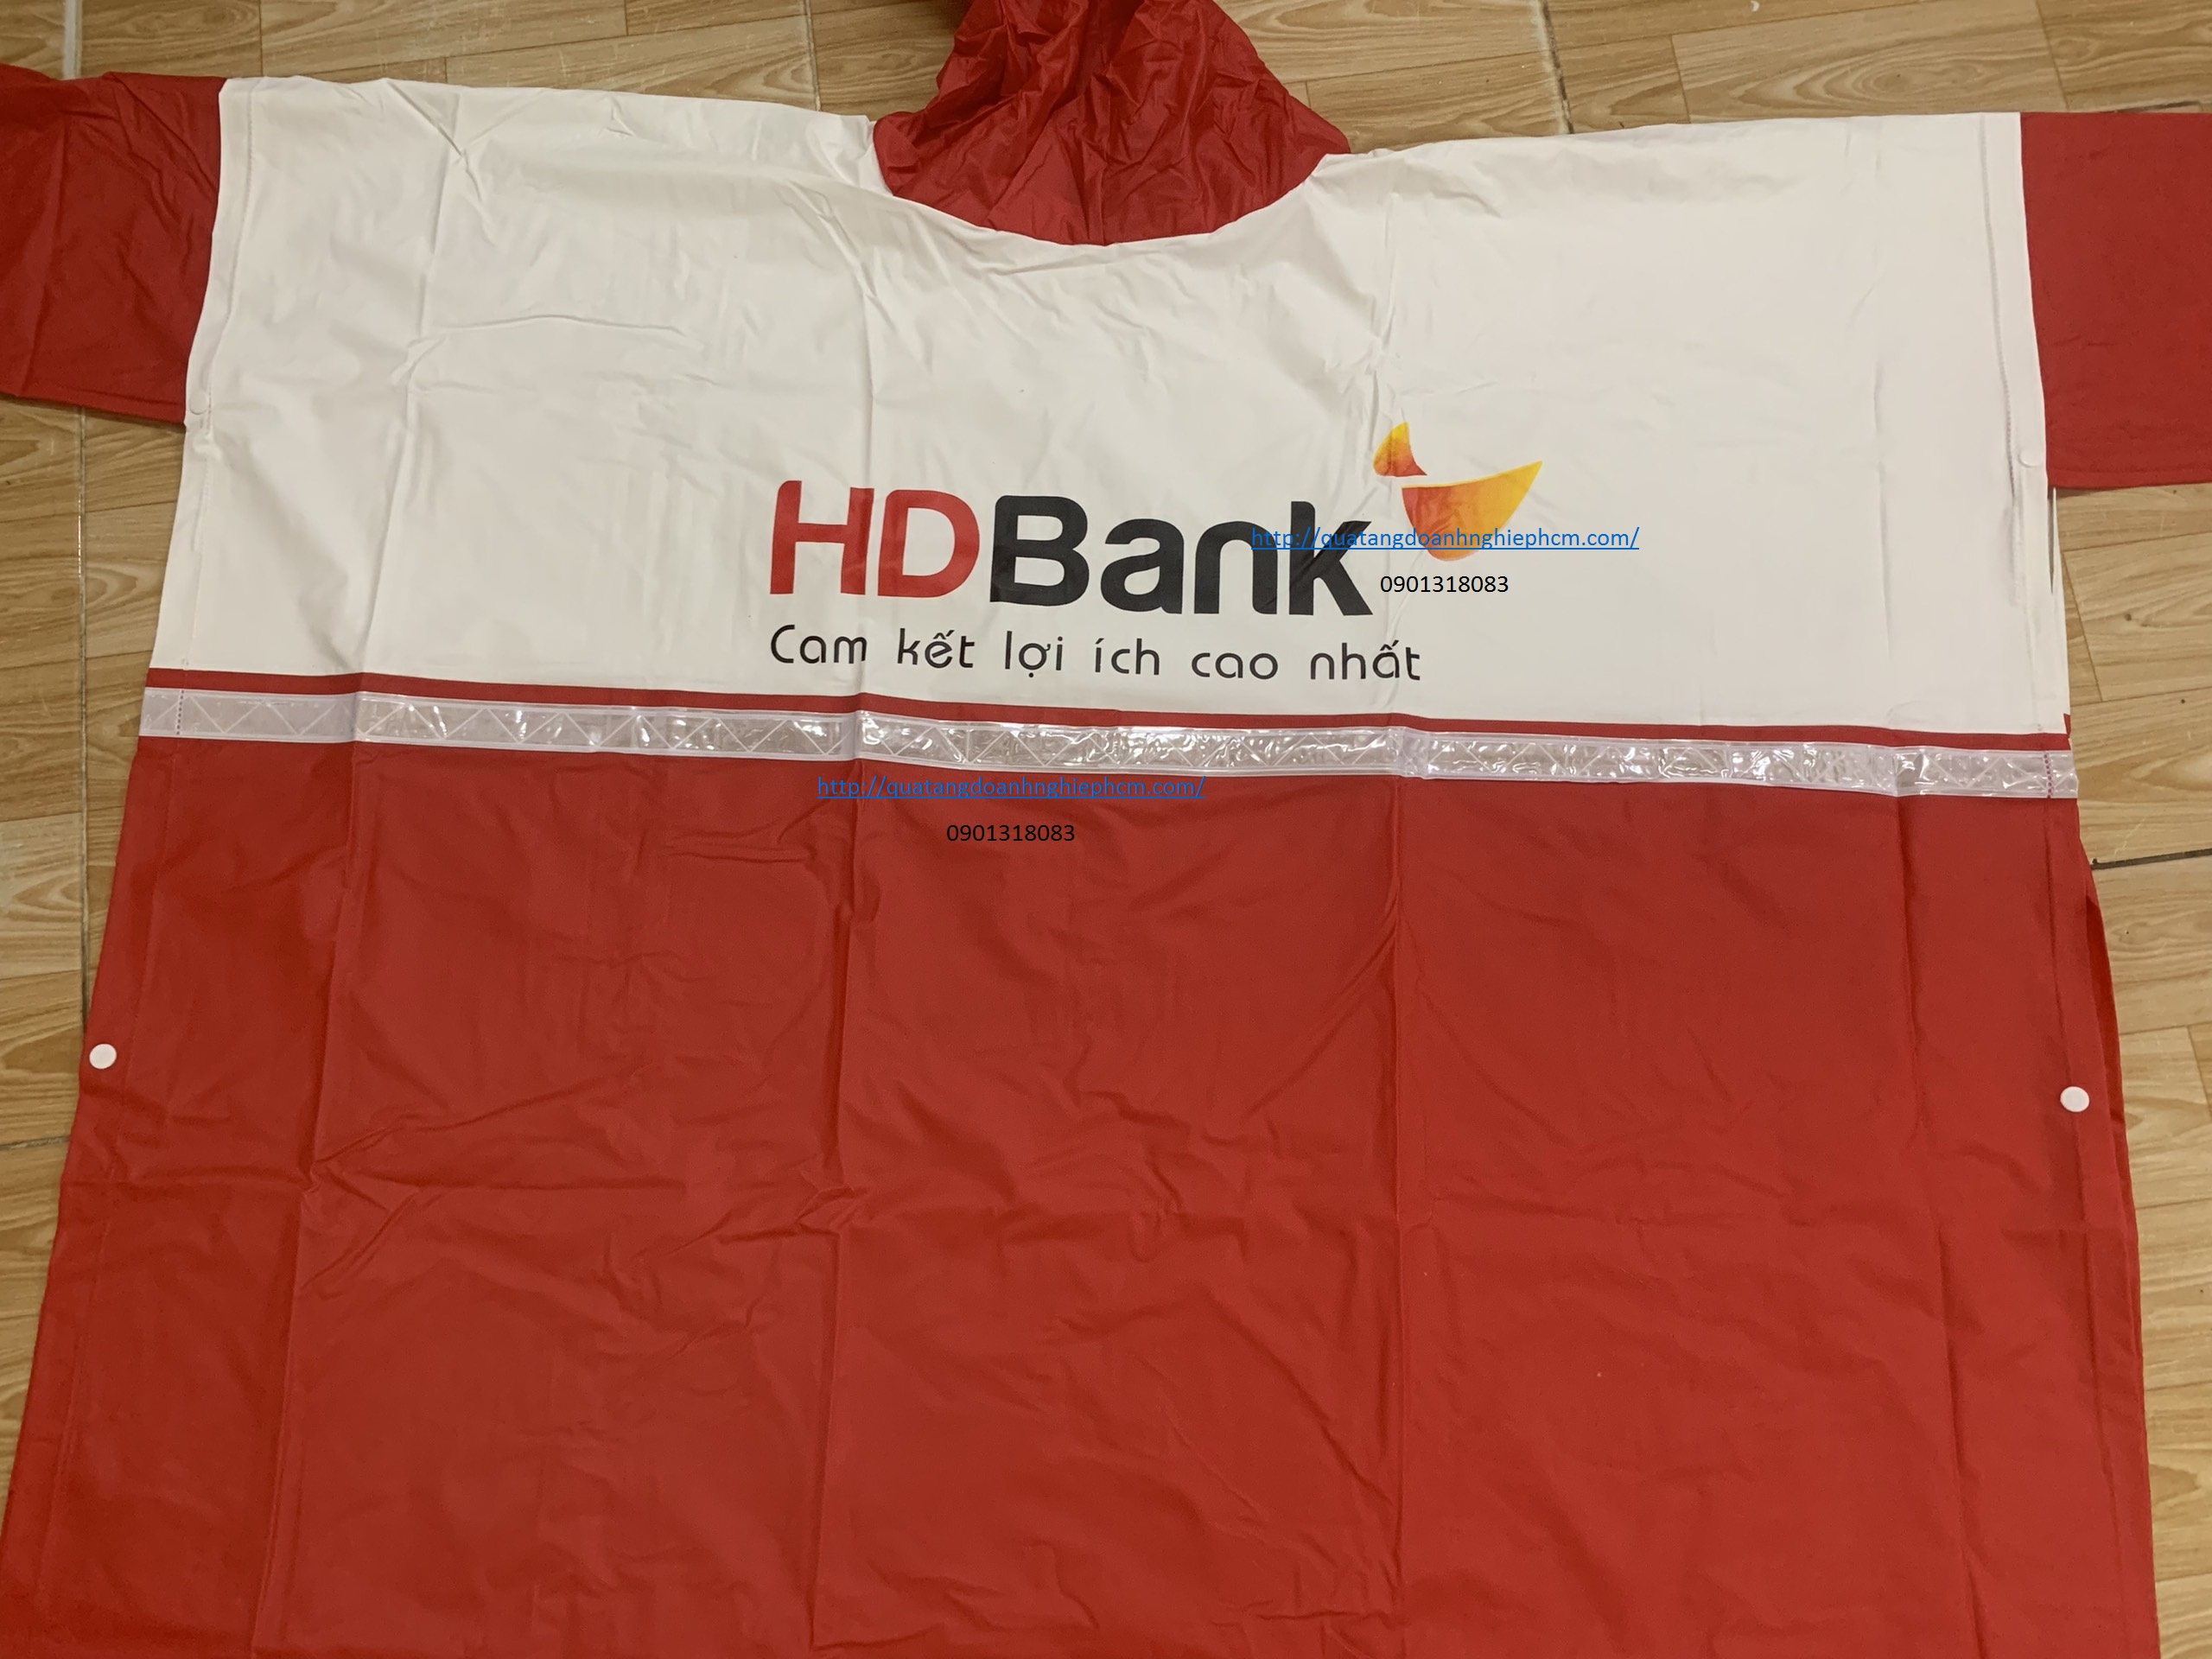 xưởng sản xuất áo mưa quà tặng cho ngân hàng HDBank